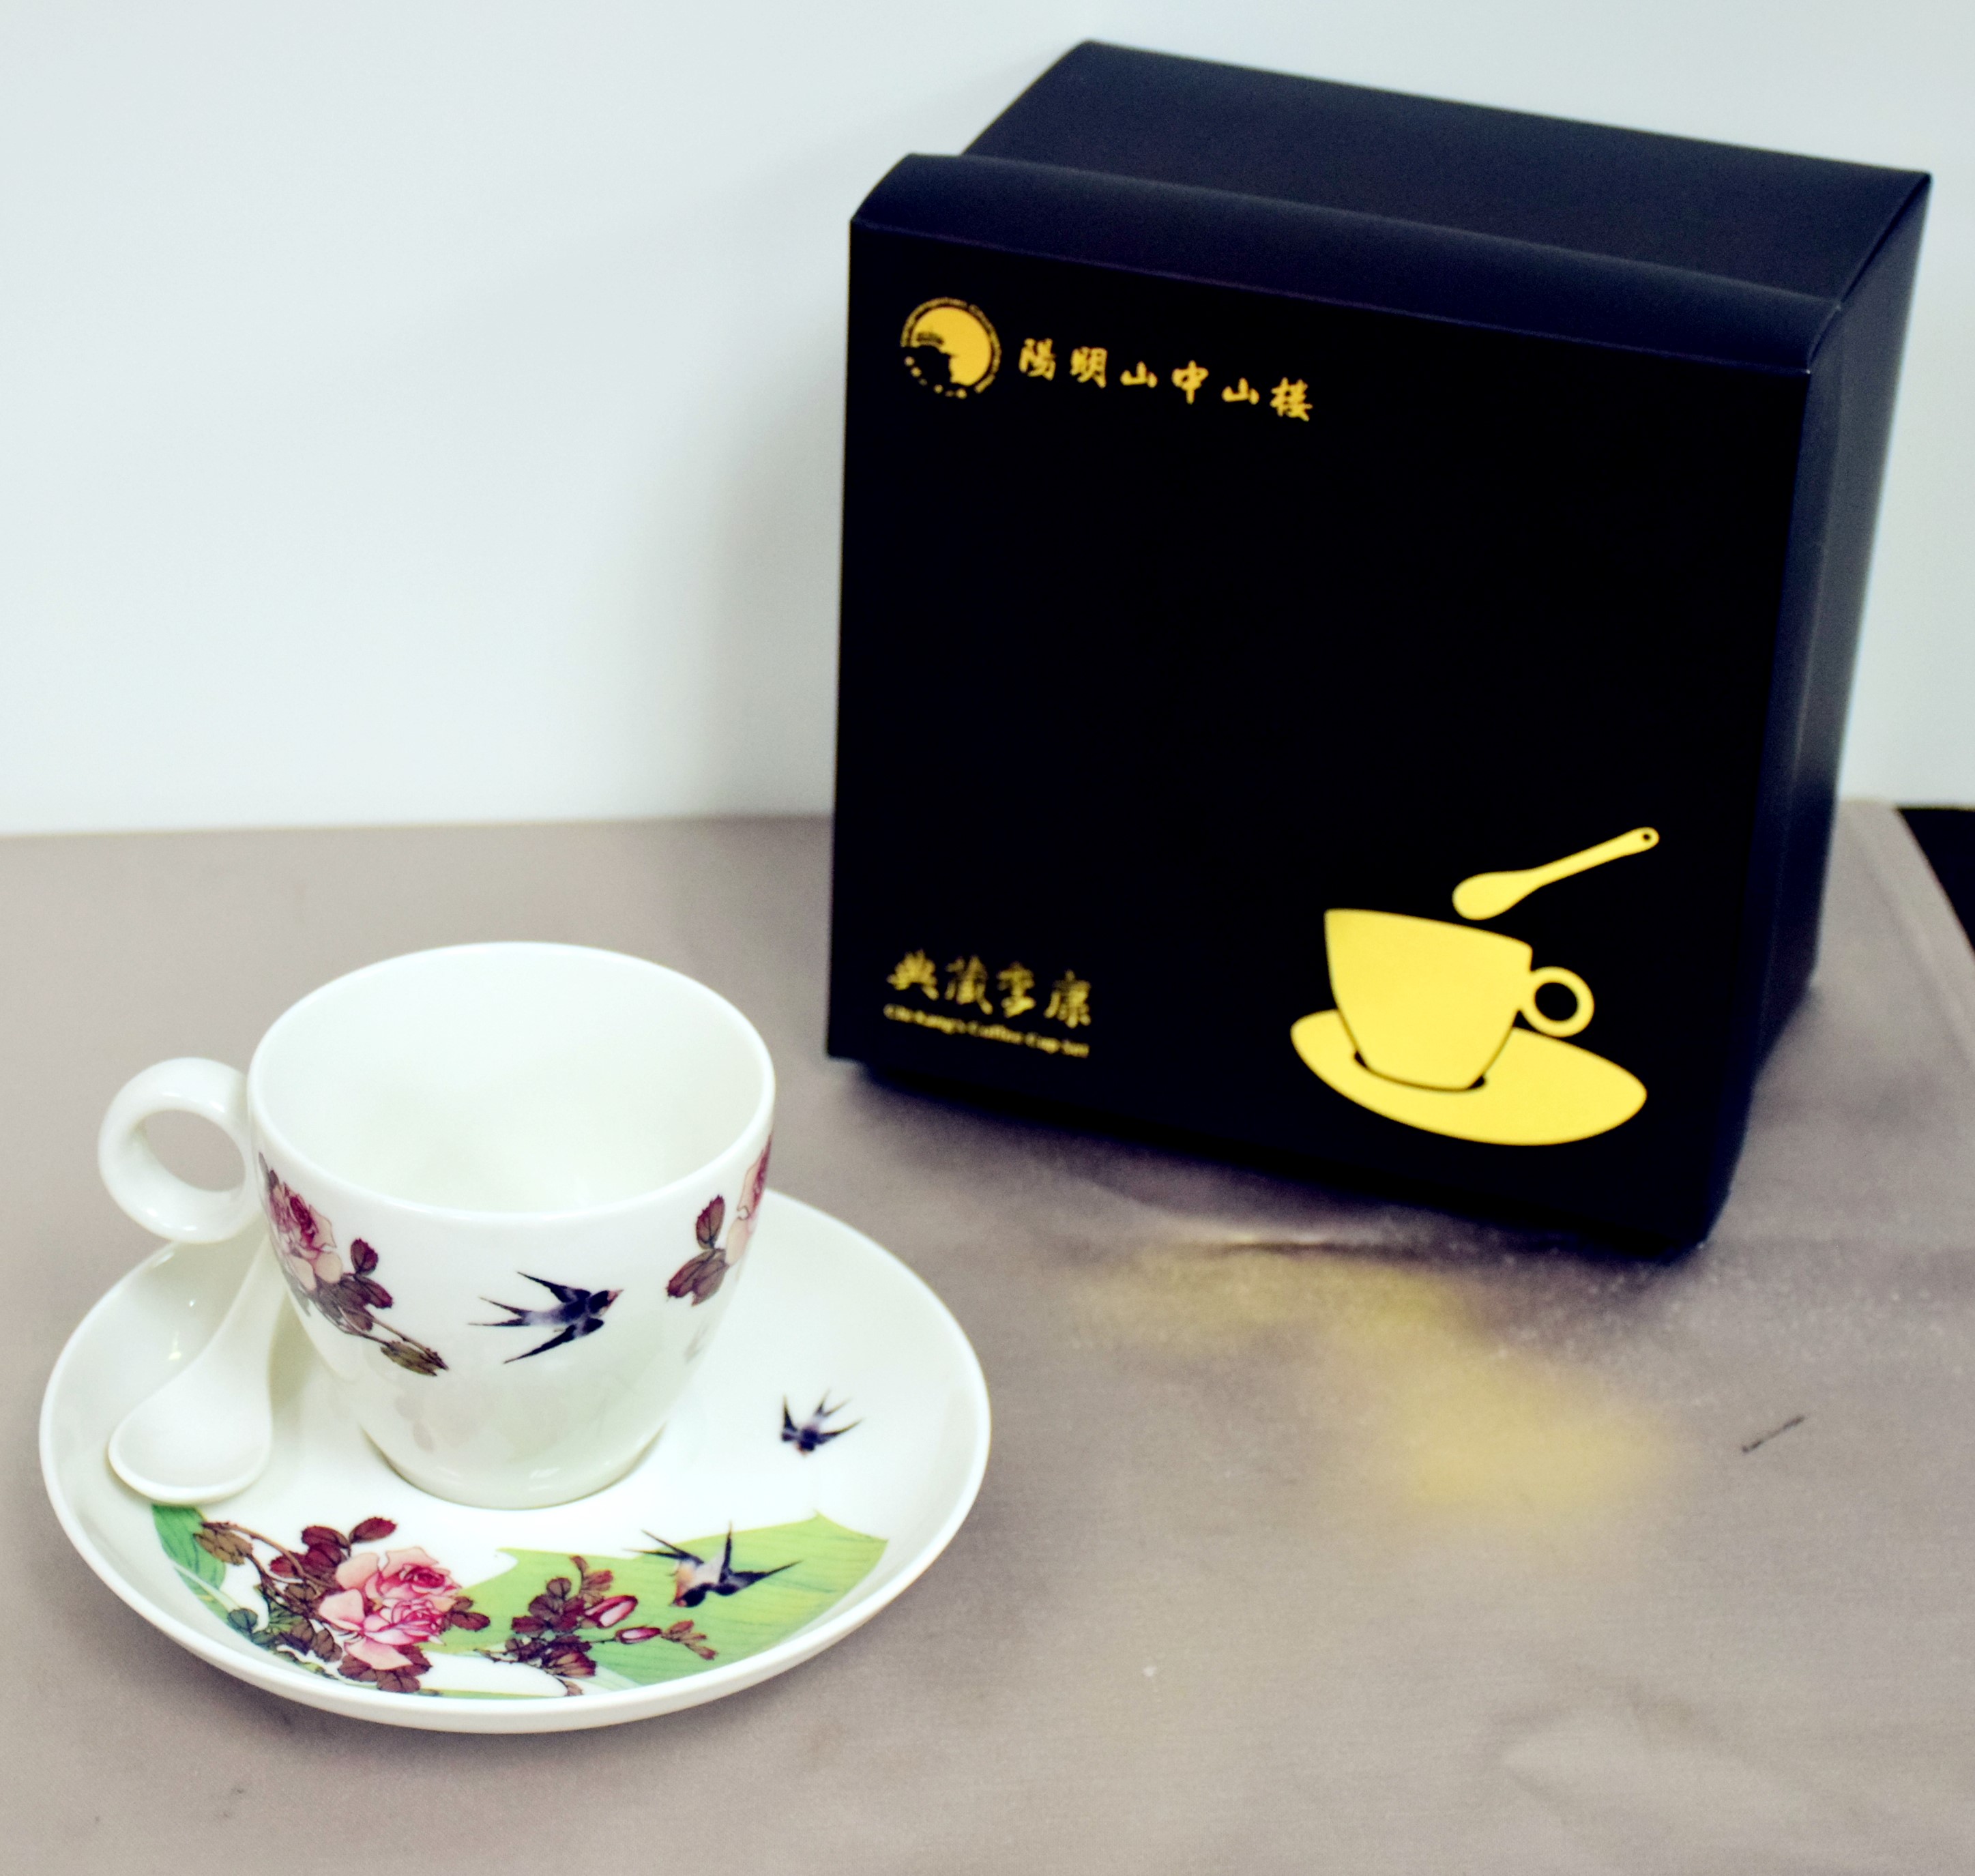 典藏季康花鳥(夏景)-咖啡杯組